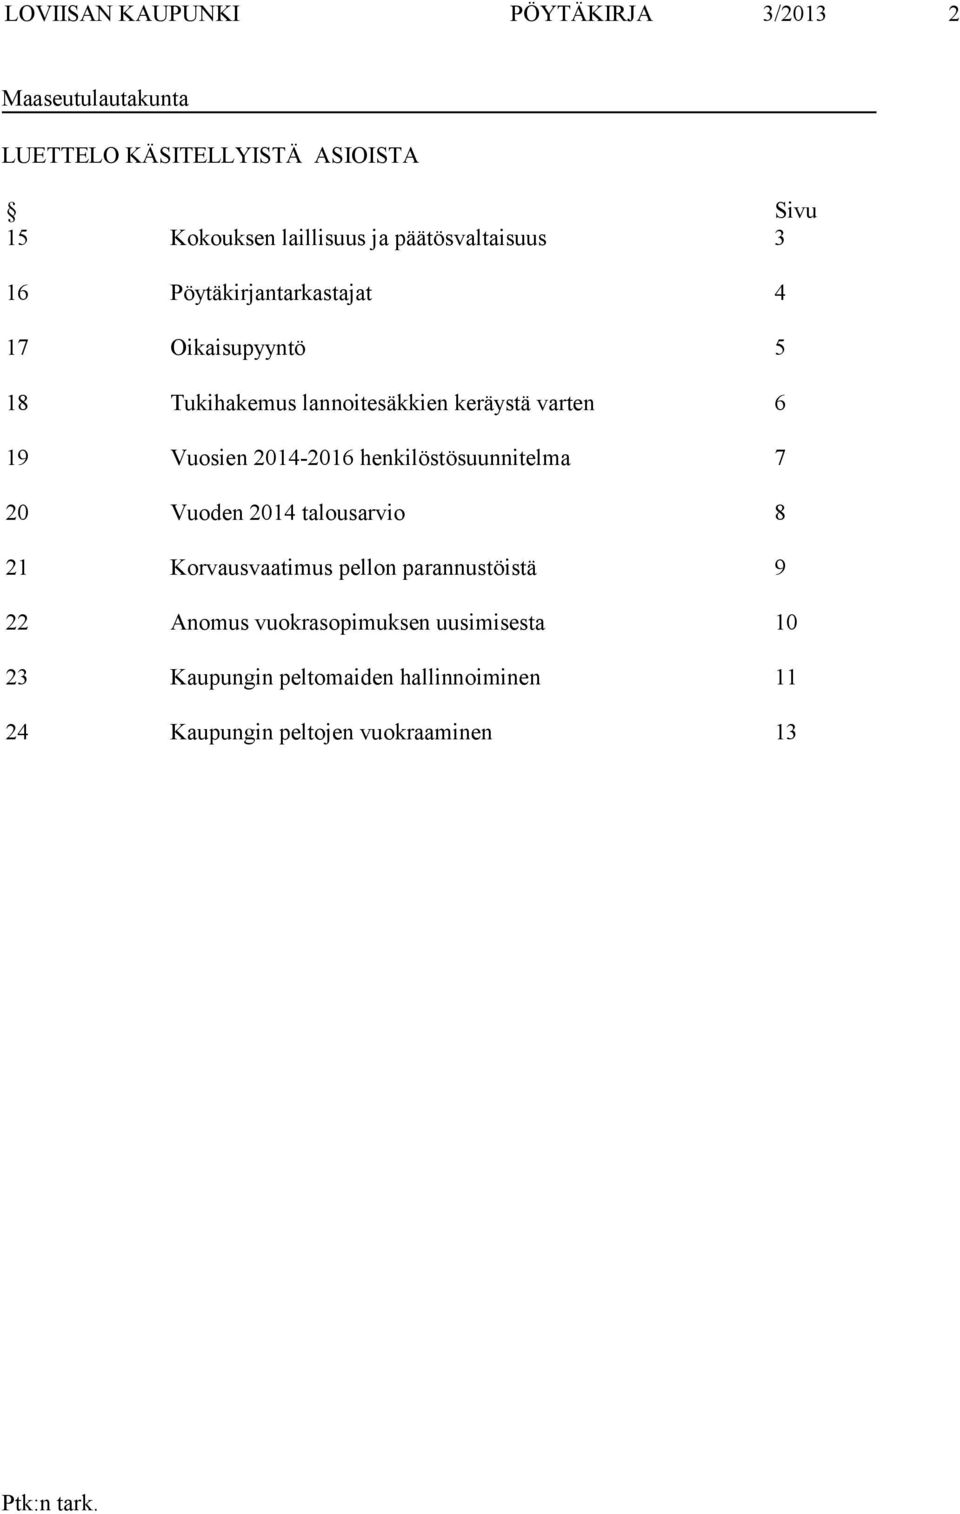 19 Vuosien 2014-2016 henkilöstösuunnitelma 7 20 Vuoden 2014 talousarvio 8 21 Korvausvaatimus pellon parannustöistä 9